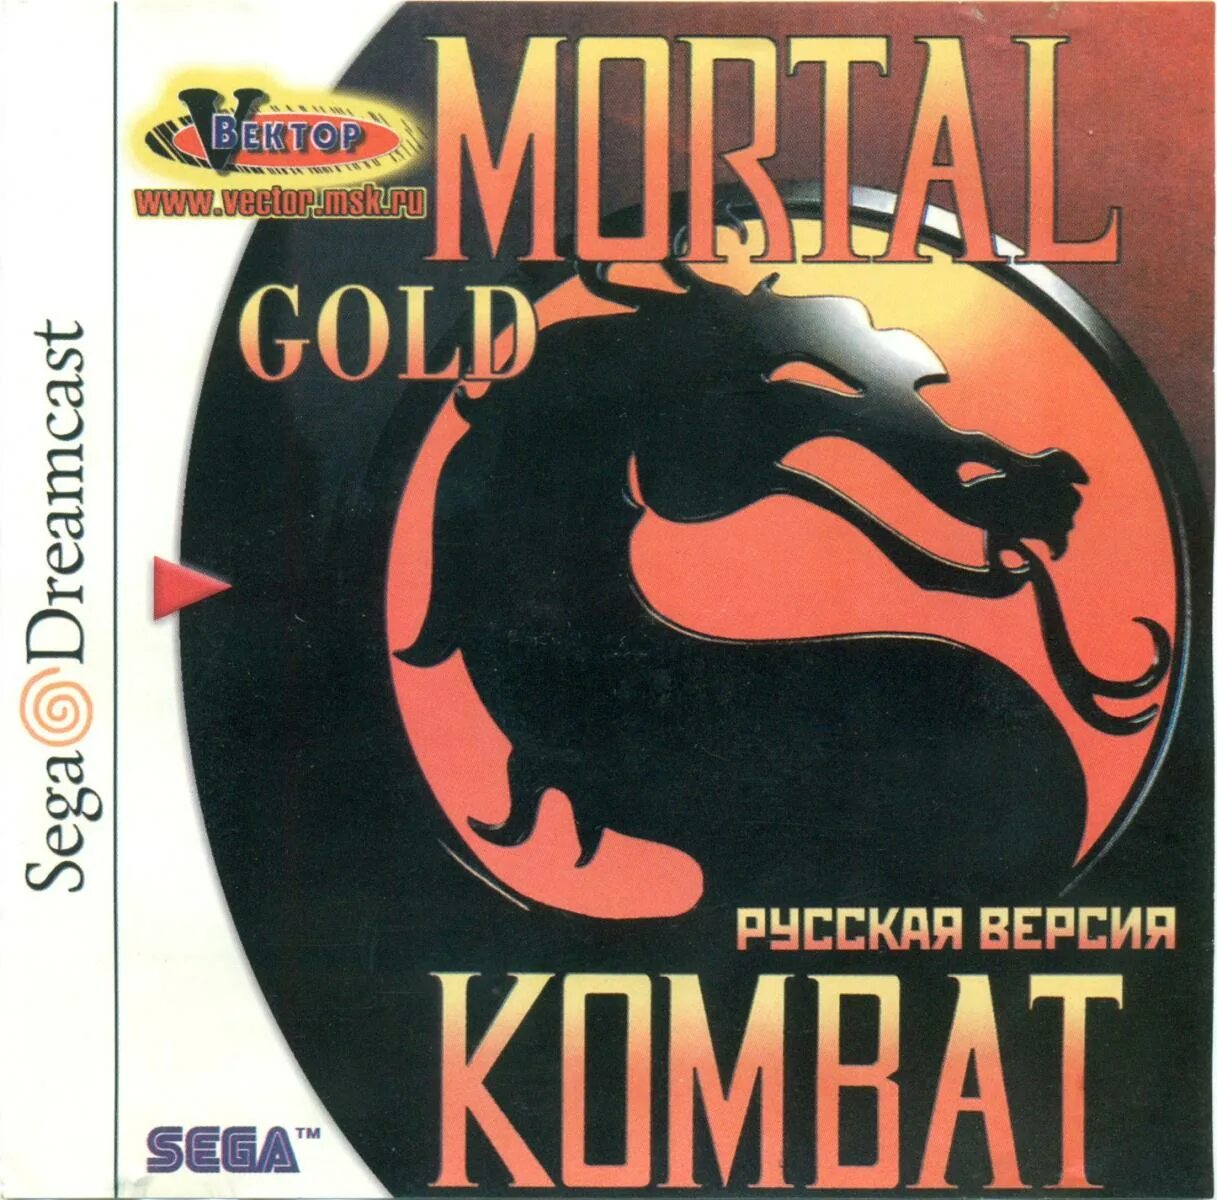 Mortal gold. MK Gold Dreamcast. Mortal Kombat Gold. Mortal Kombat Gold Dreamcast. Mortal Kombat Gold Dreamcast Cover.